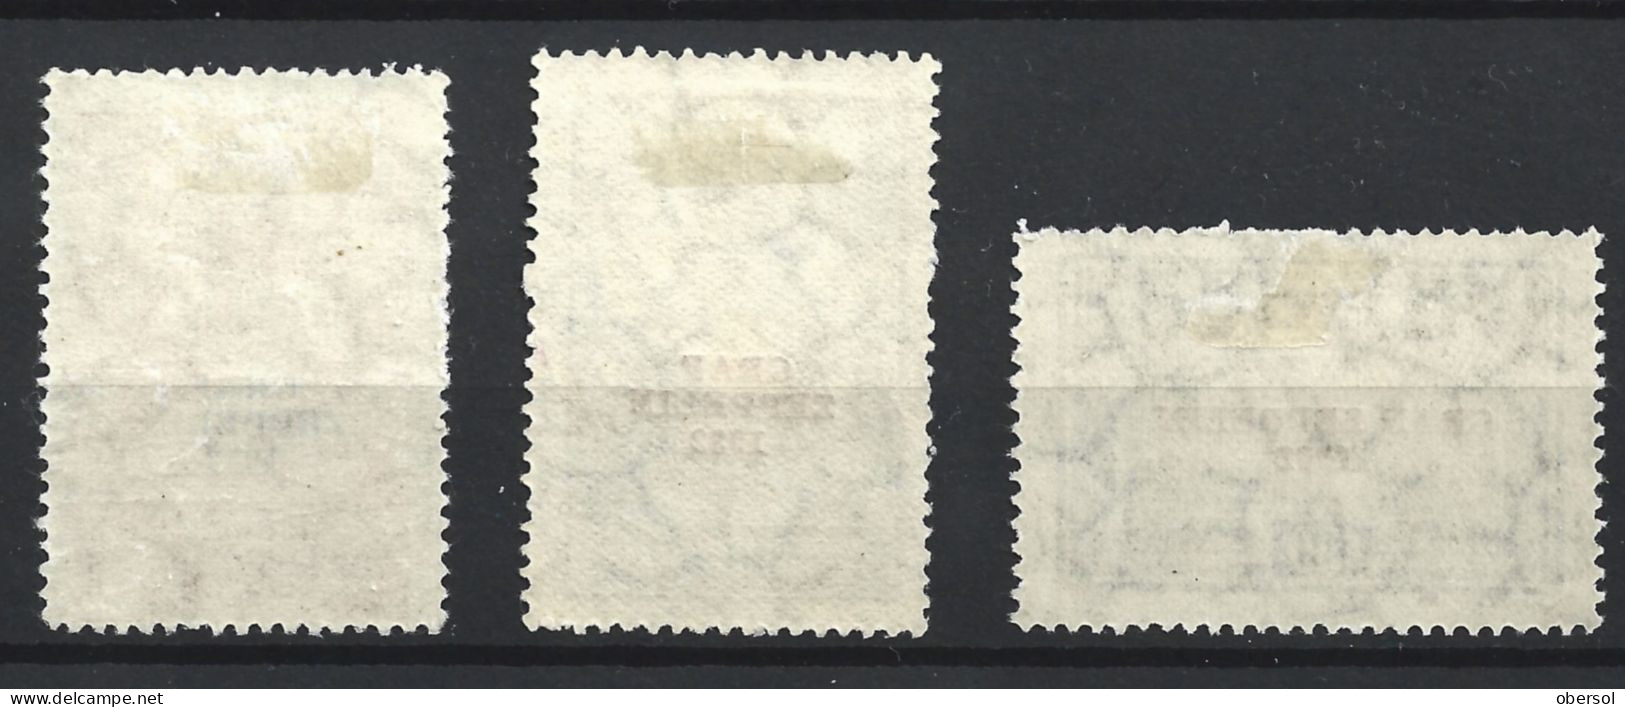 Argentina 1932 Graf Zeppelin Overprint Complete Set MH Stamps ** HCV ** - Ungebraucht